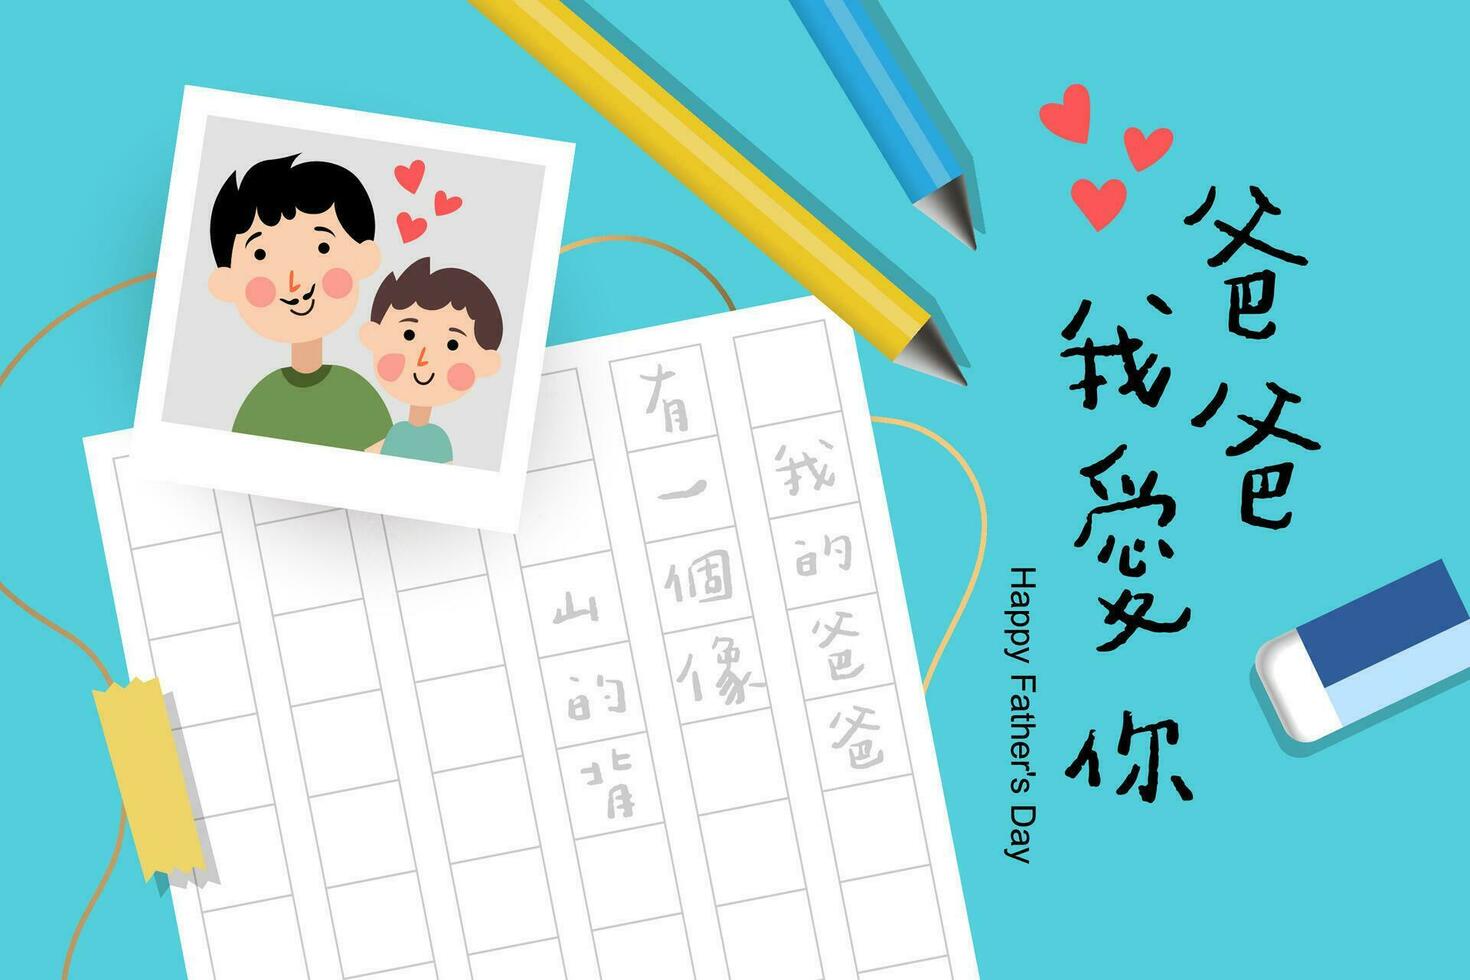 vektor illustration av glad firande av Lycklig fars dag hand dragen text fras. kinesisk text betyder far jag kärlek du.